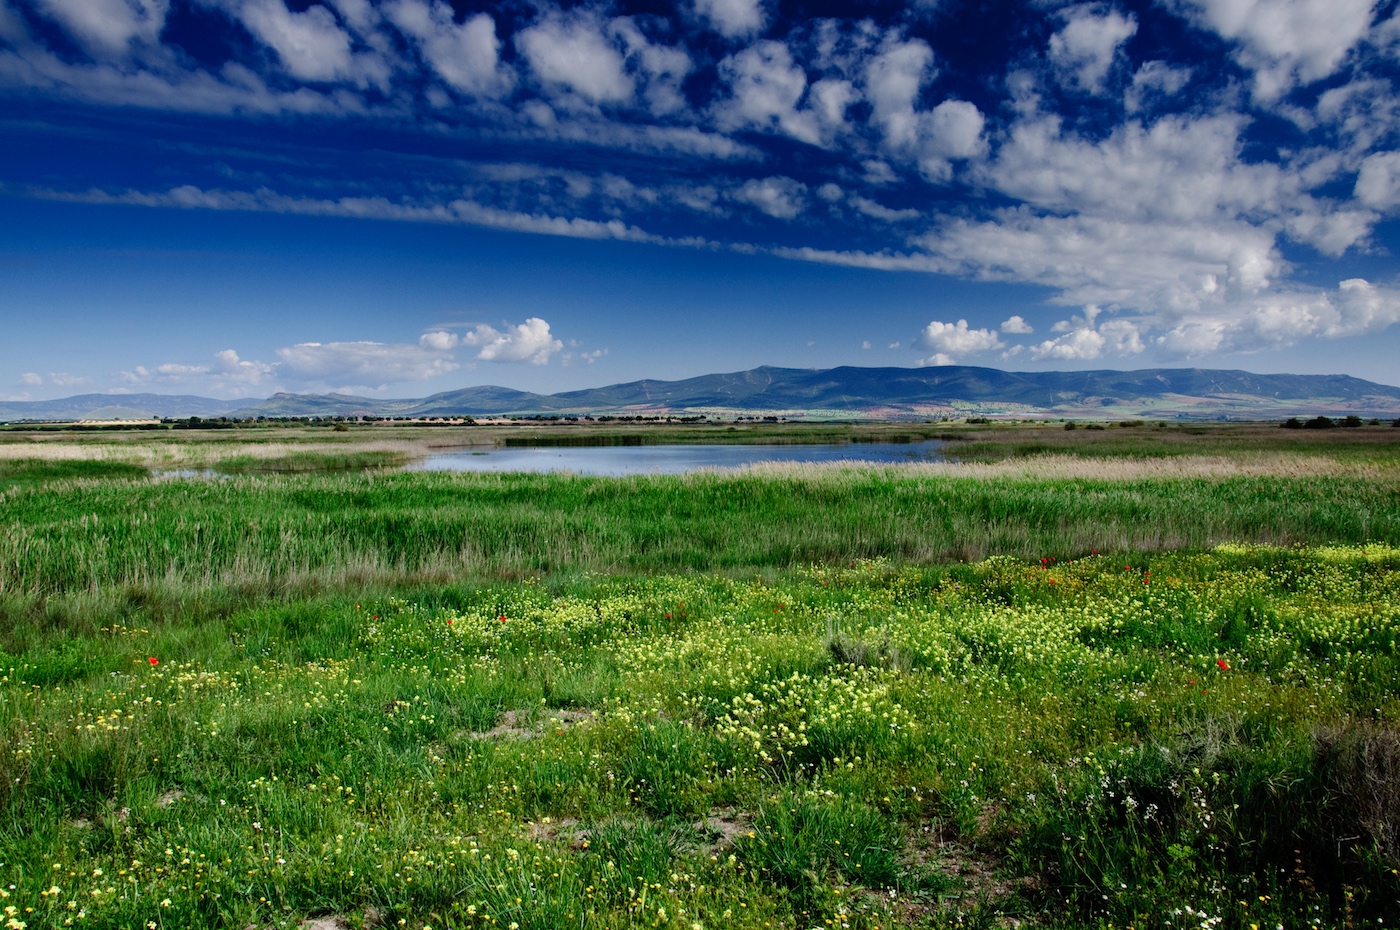 Les prairies à haute biodiversité pourraient davantage résister aux événements climatiques extrêmes. Ici, une prairie dans le Parc national des Tablas de Daimiel, en Espagne. © yannboix, Flickr, CC by 2.0